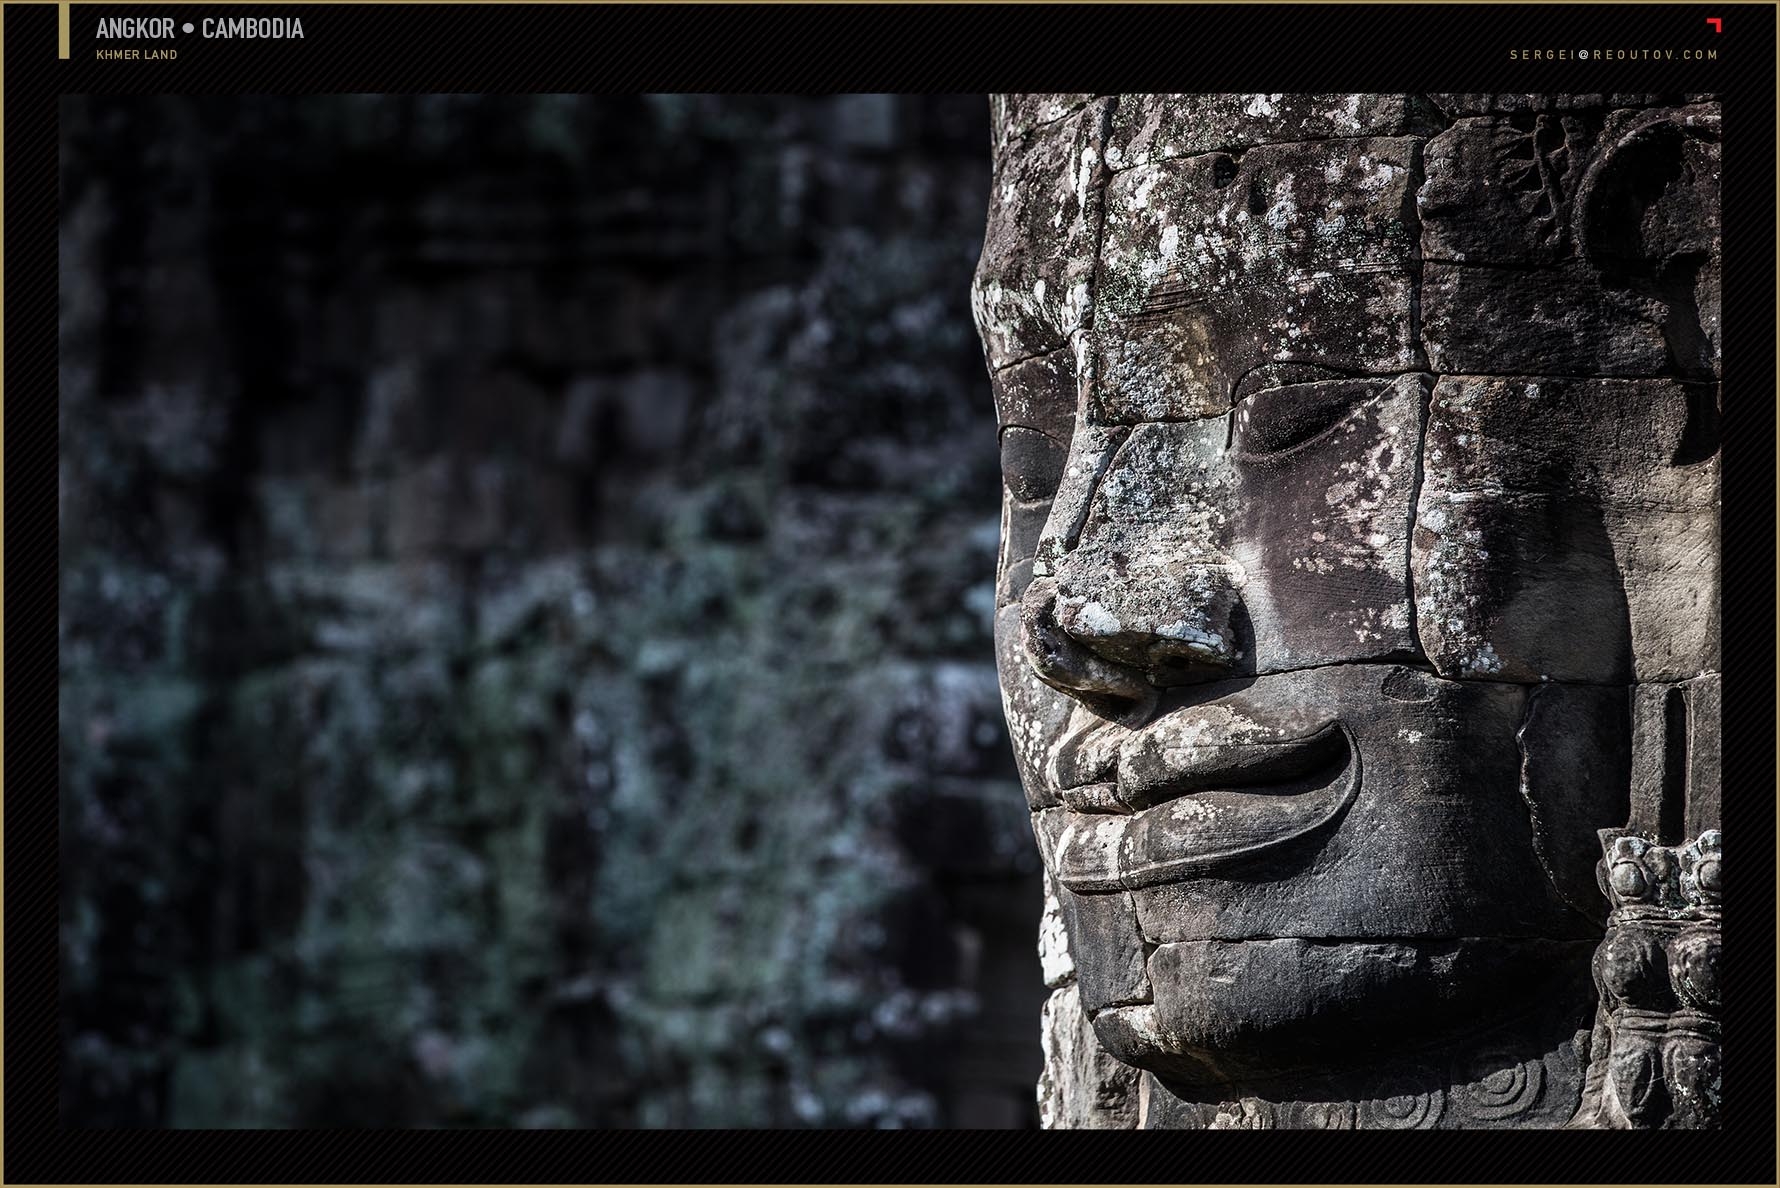 Buddha face at Angkor Wat temple